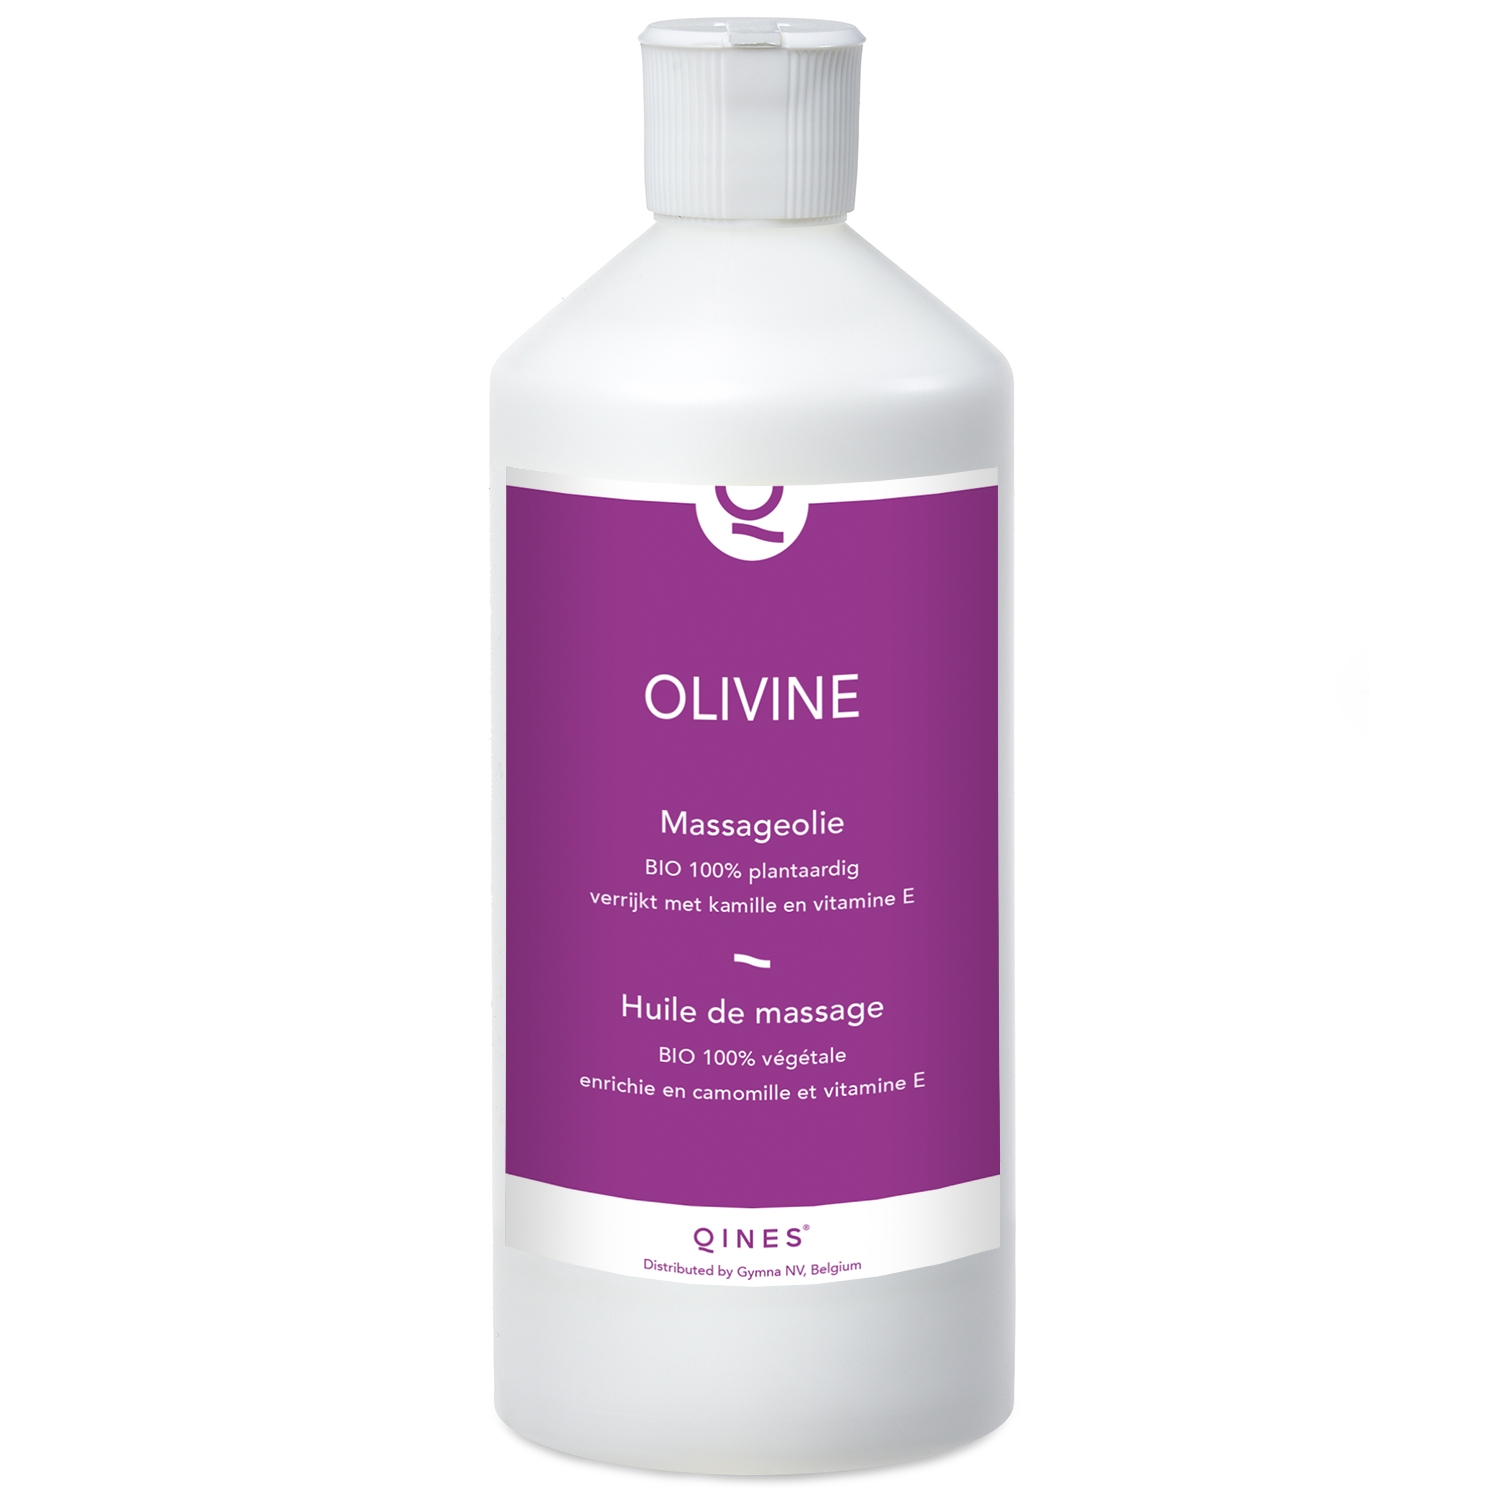 Huile de massage Olivine bio - Qines - 500 ml